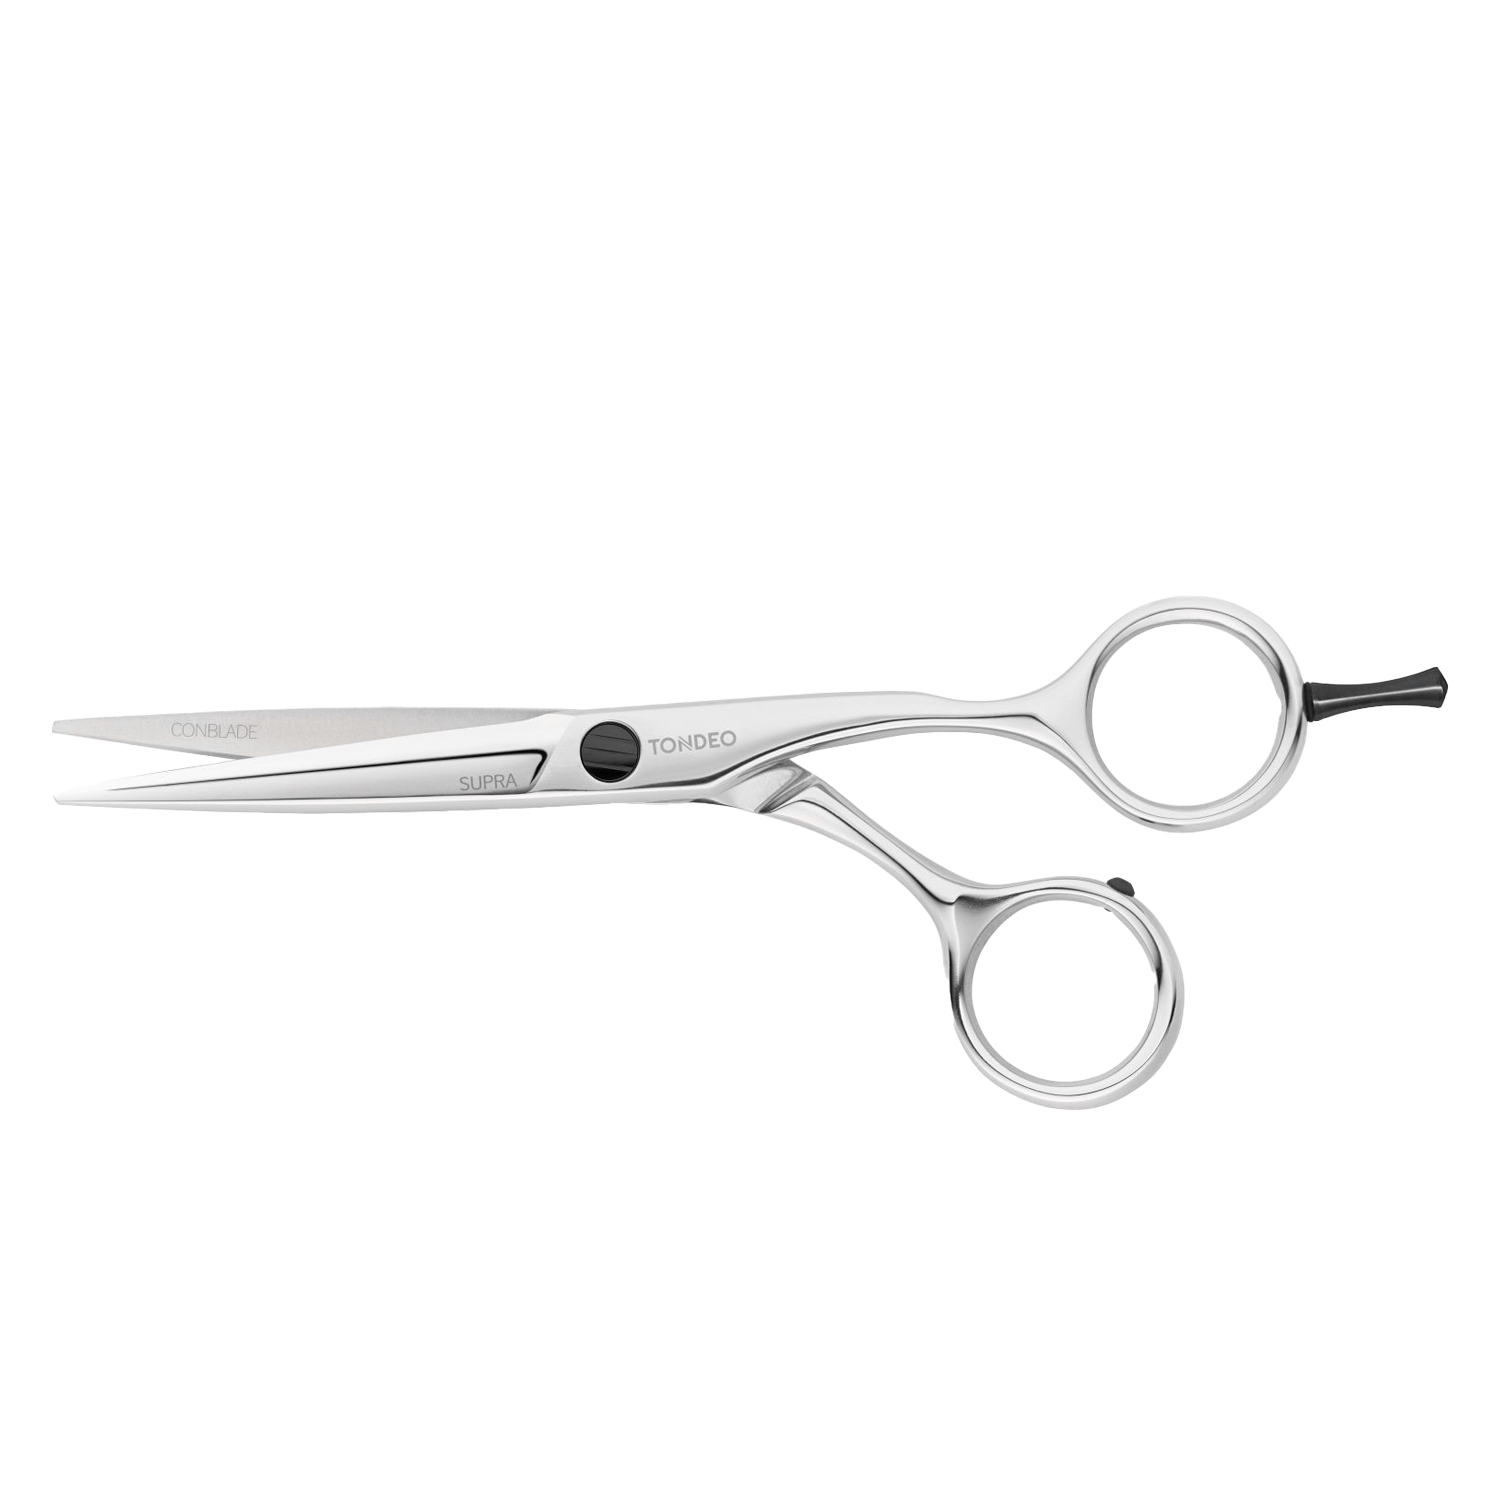 Produktbild von Tondeo Scissors - Supra Offset Scissors 5.5" CONBLADE